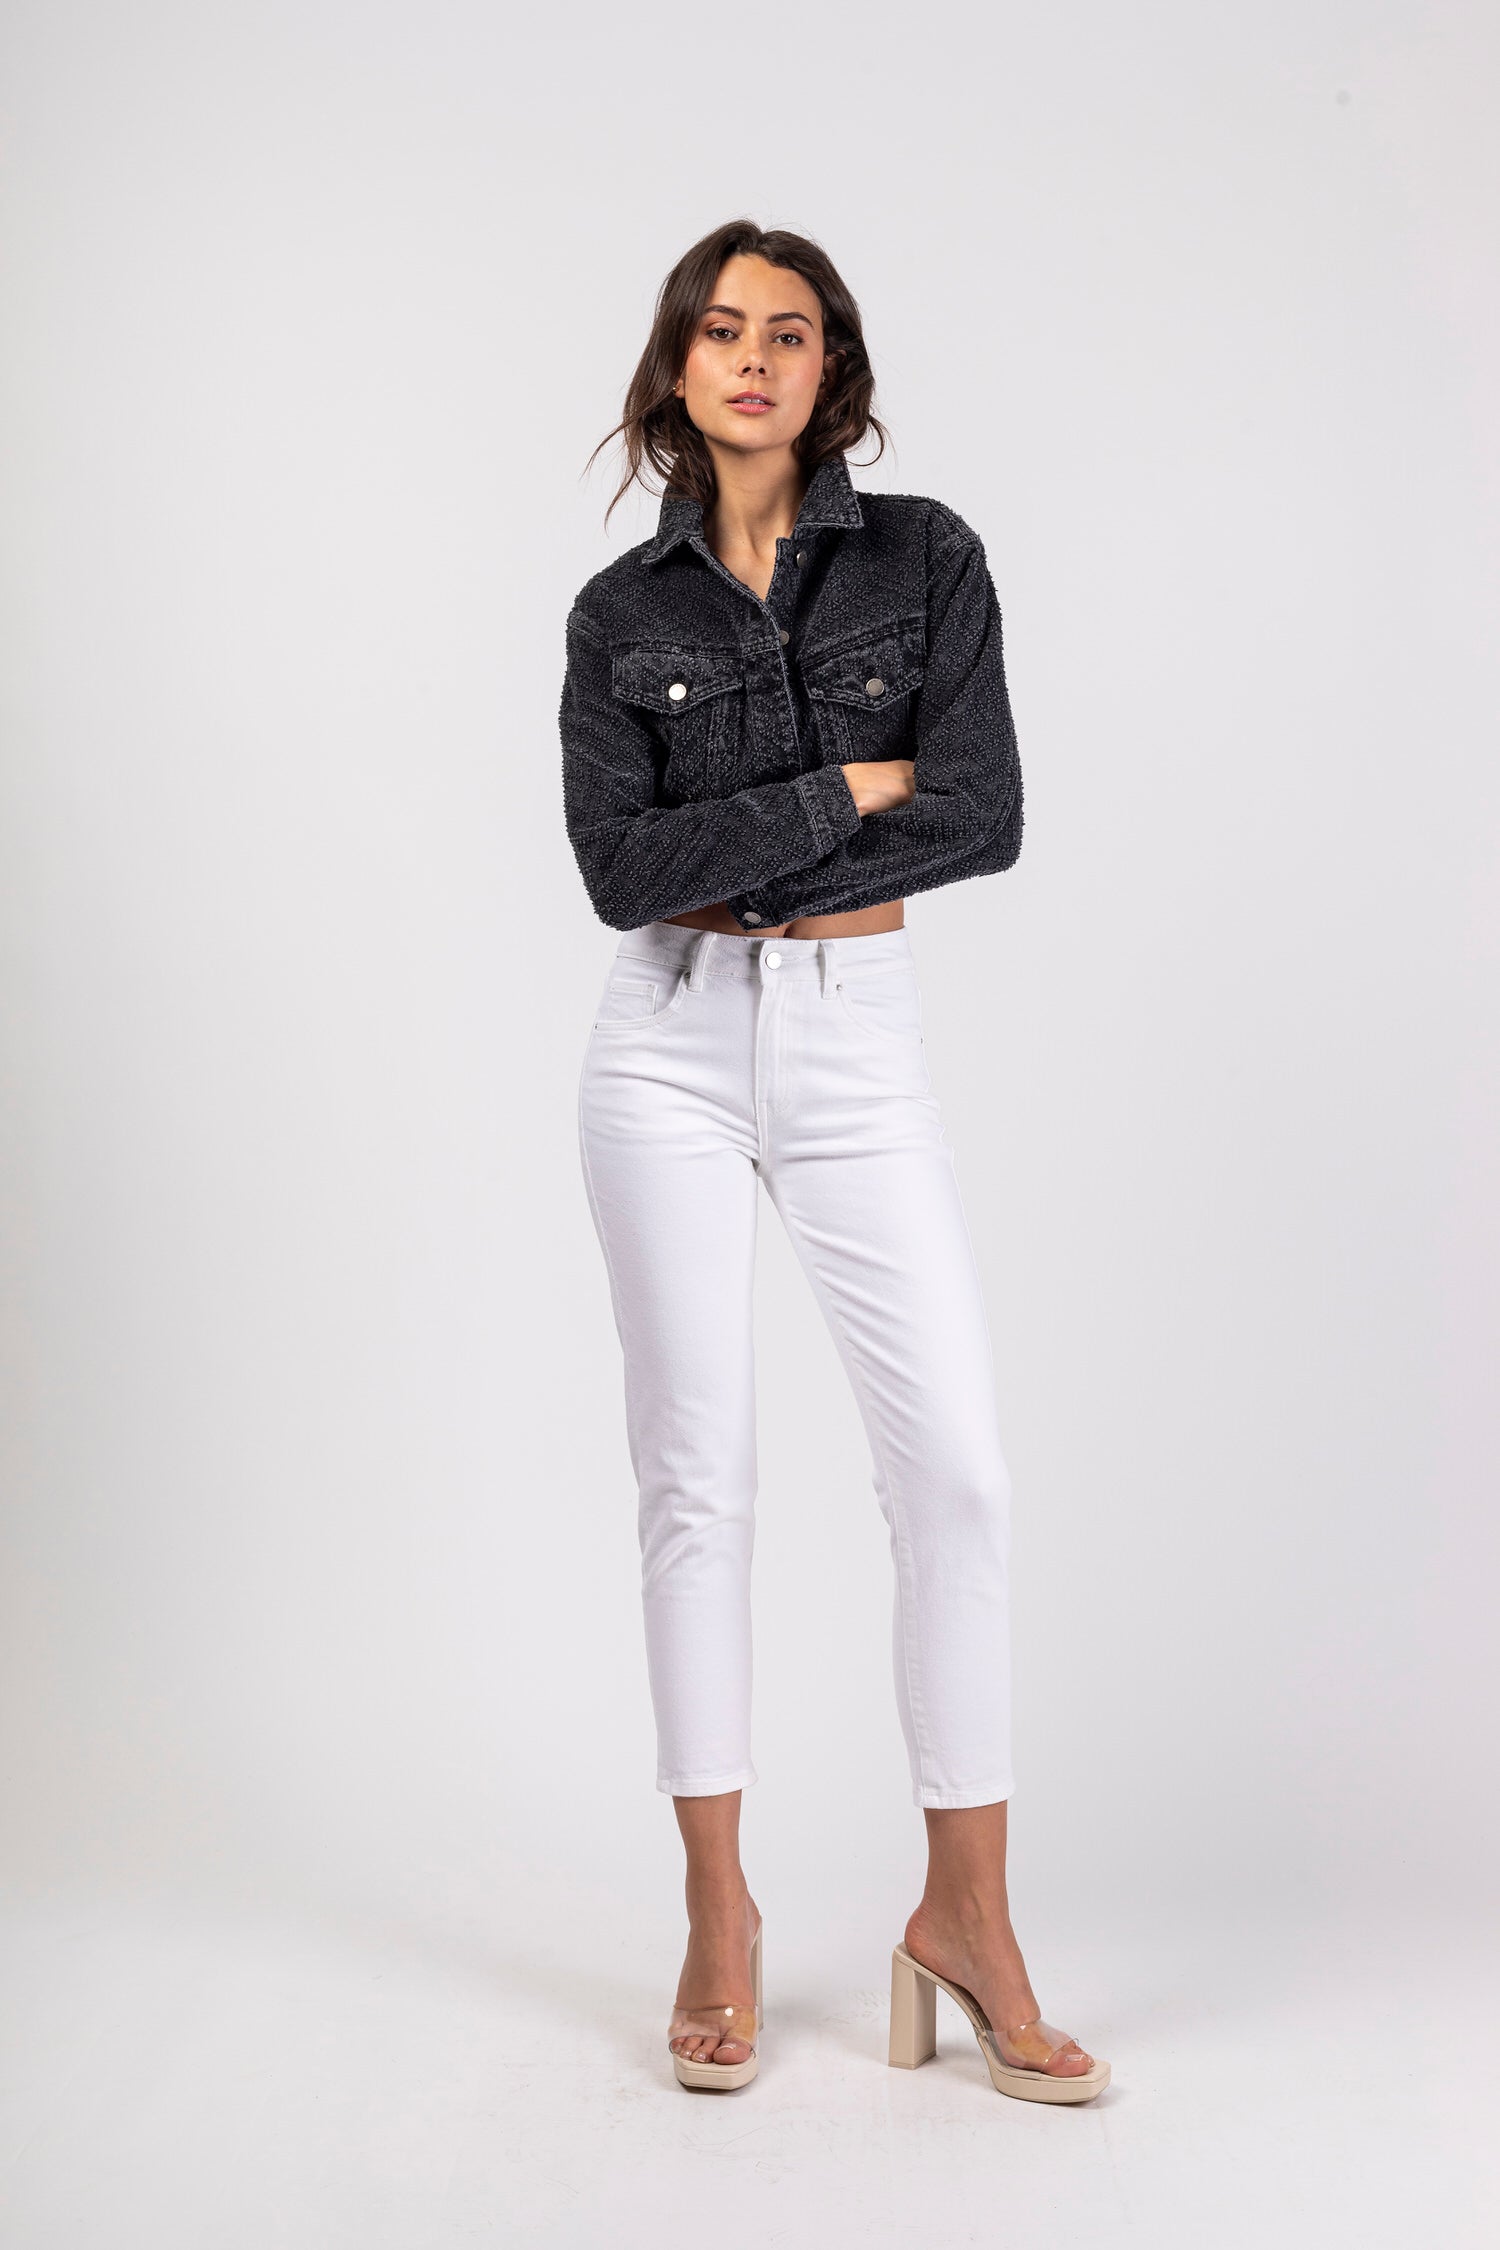 Short jeans jacket - Sista